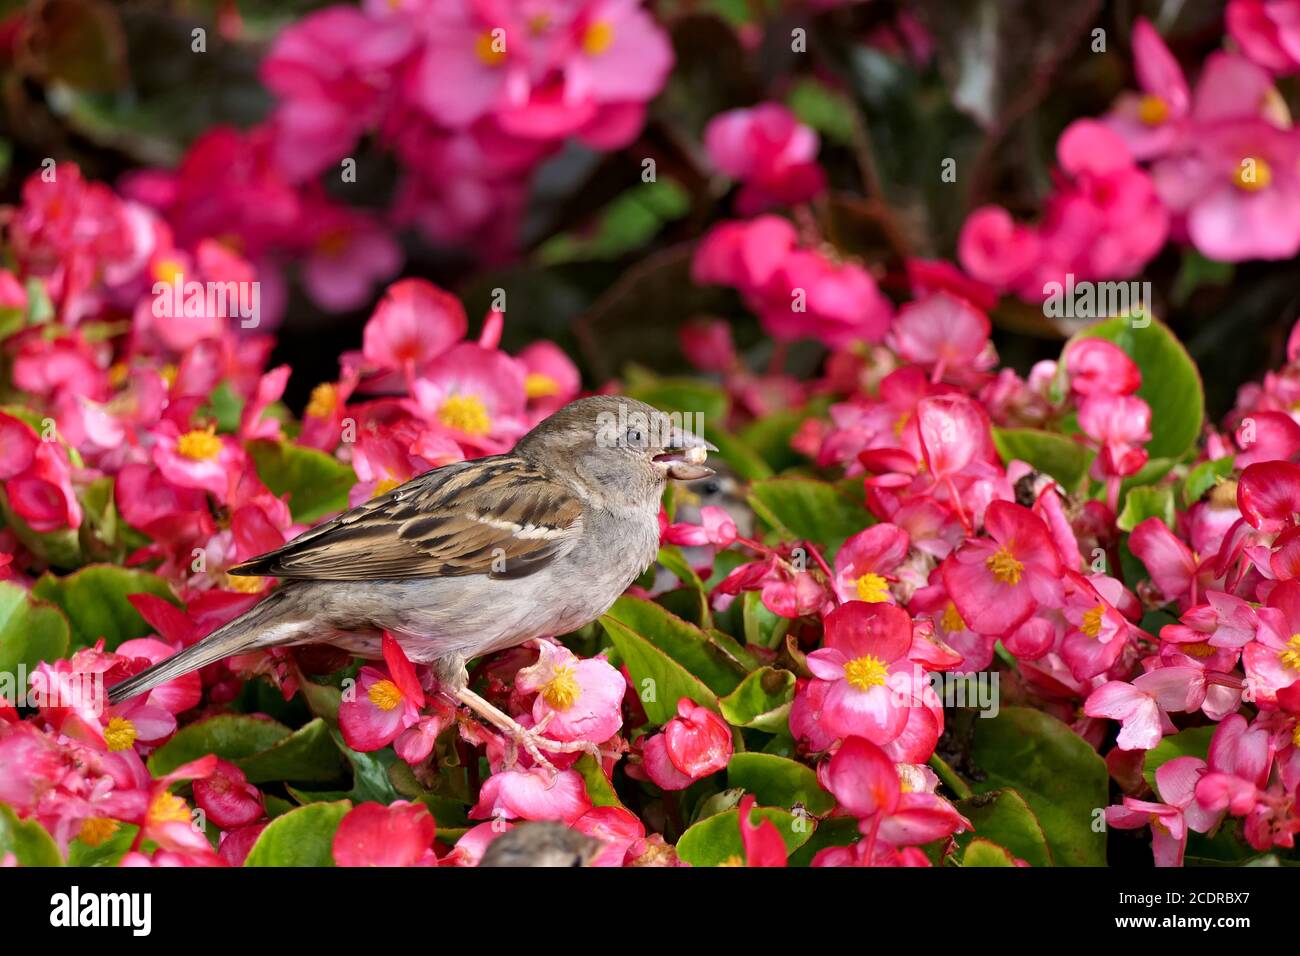 Nahaufnahme niedlichen weiblichen Haussperling oder Passant domesticus sammeln Nahrung In einem rosa blühenden Blumenstrauch in einem Garten Stockfoto